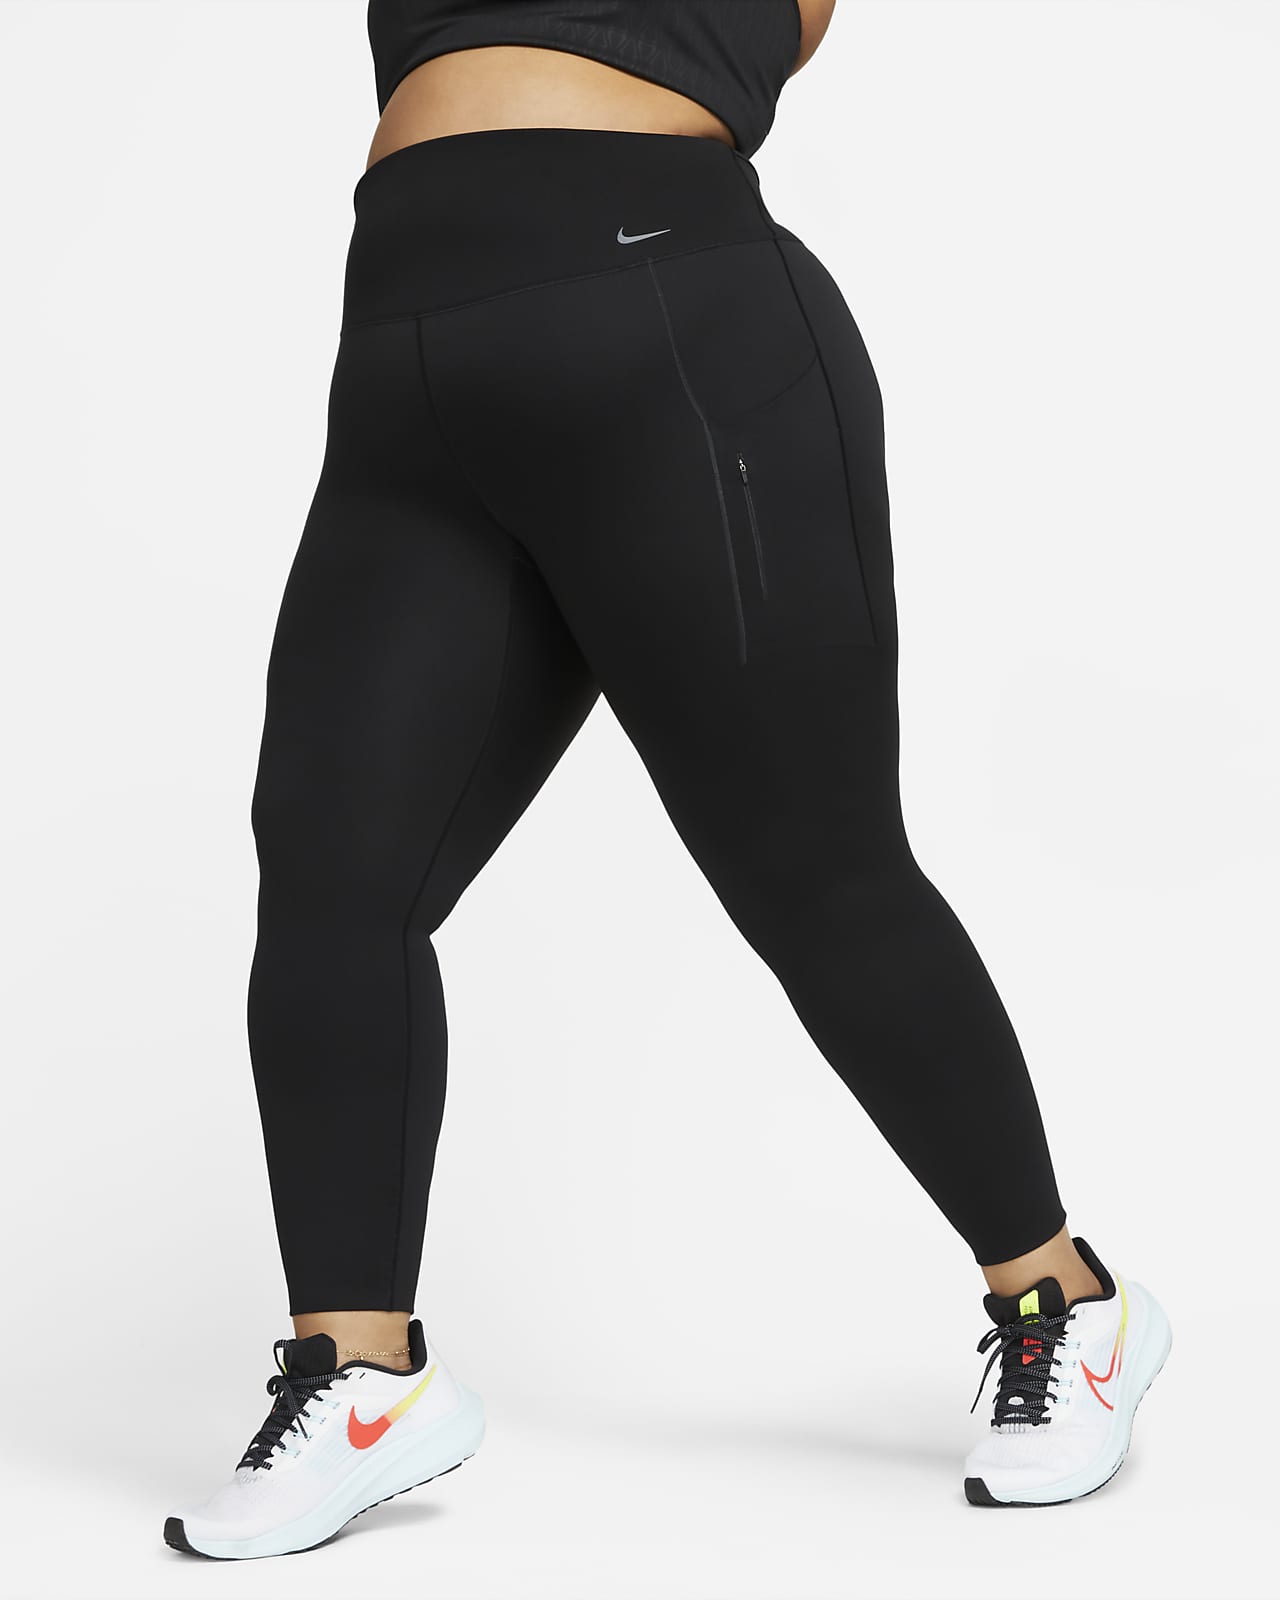 Damskie legginsy o pełnej długości z wysokim stanem i kieszeniami  zapewniające mocne wsparcie Nike Go (duże rozmiary)